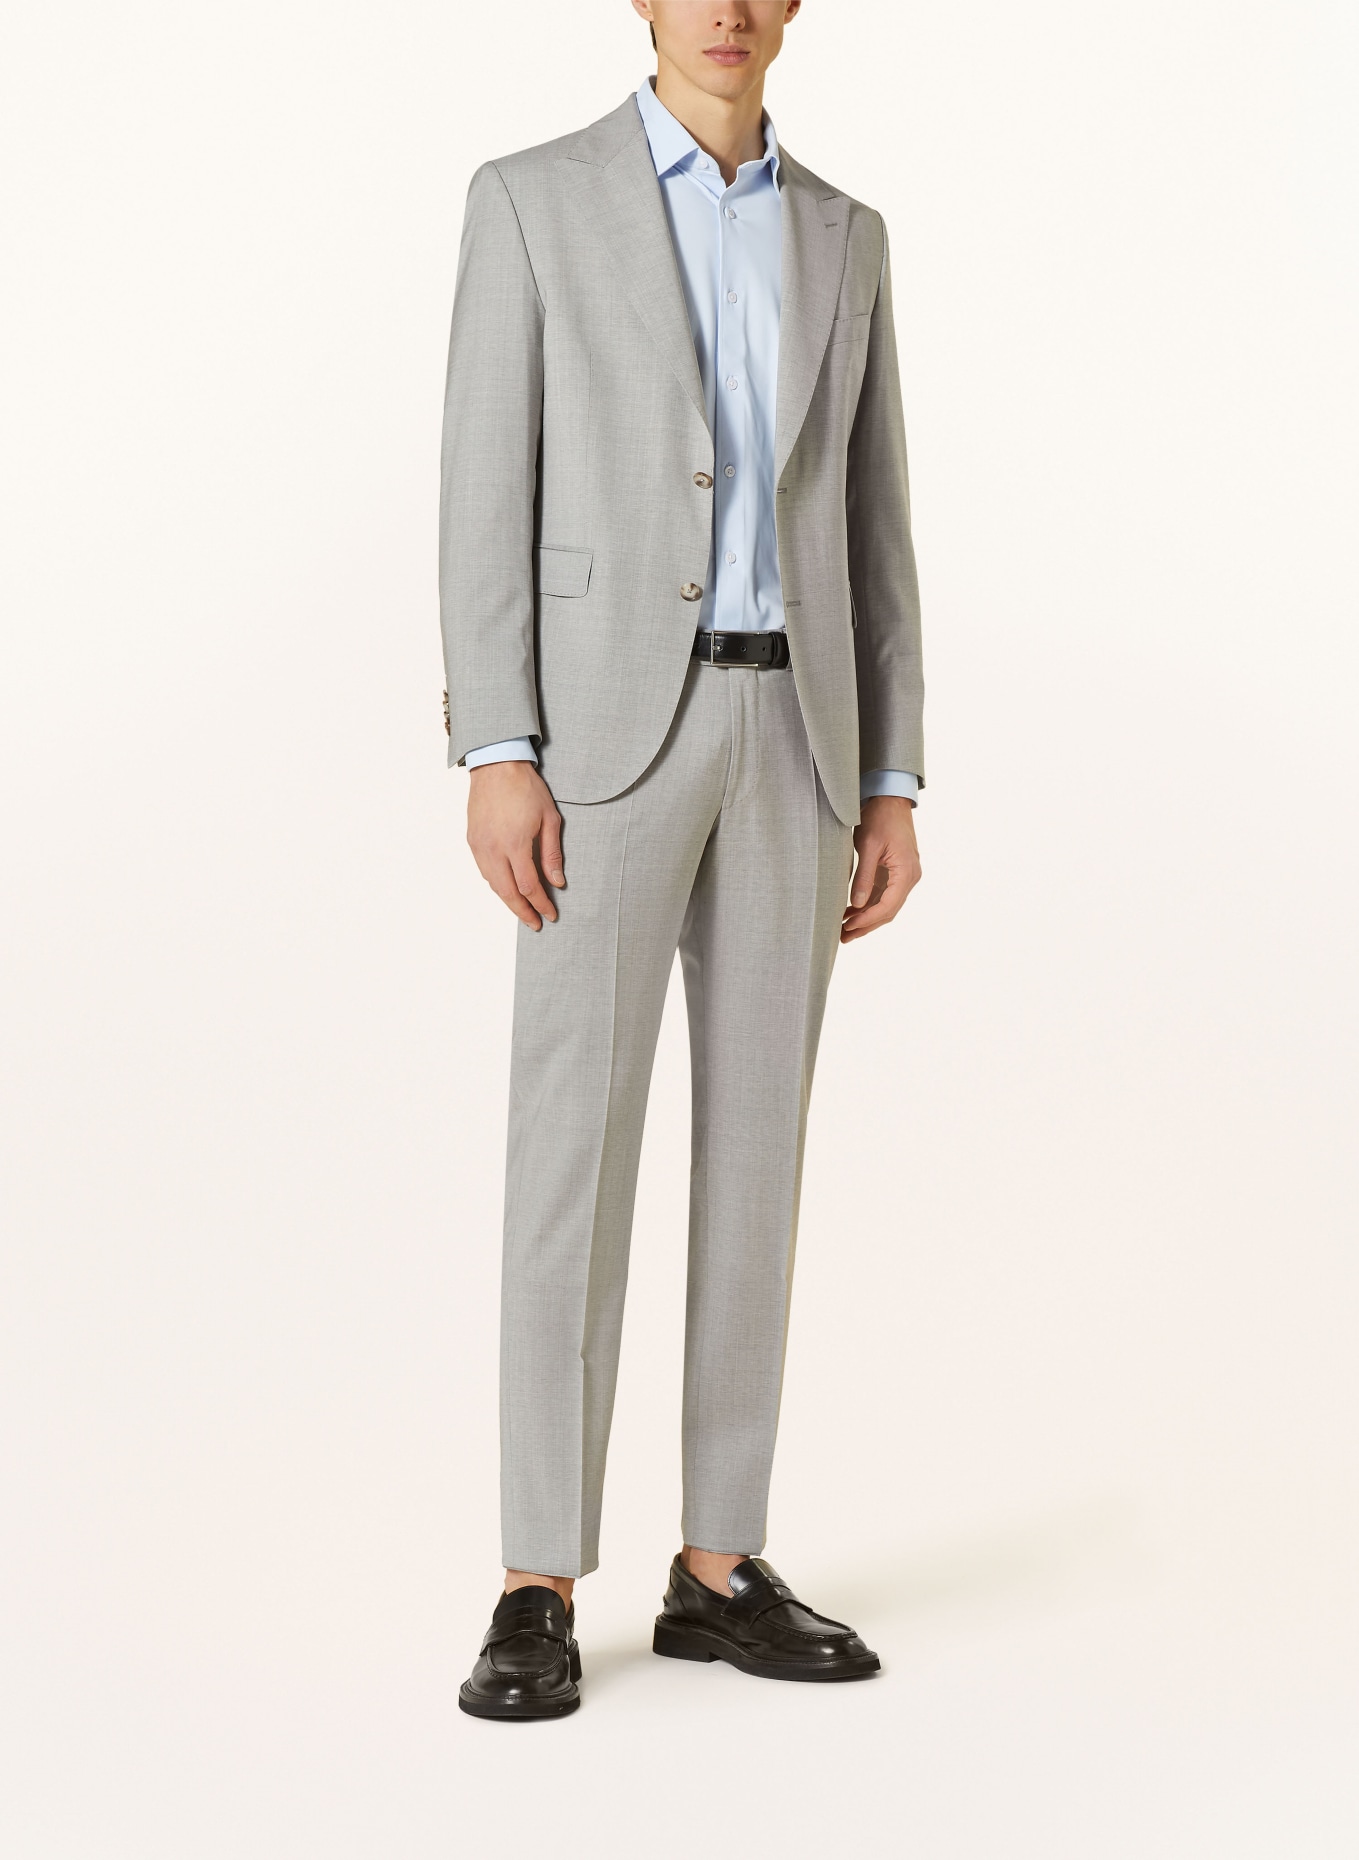 EDUARD DRESSLER Suit trousers shaped fit, Color: 013 HELLGRAU (Image 2)